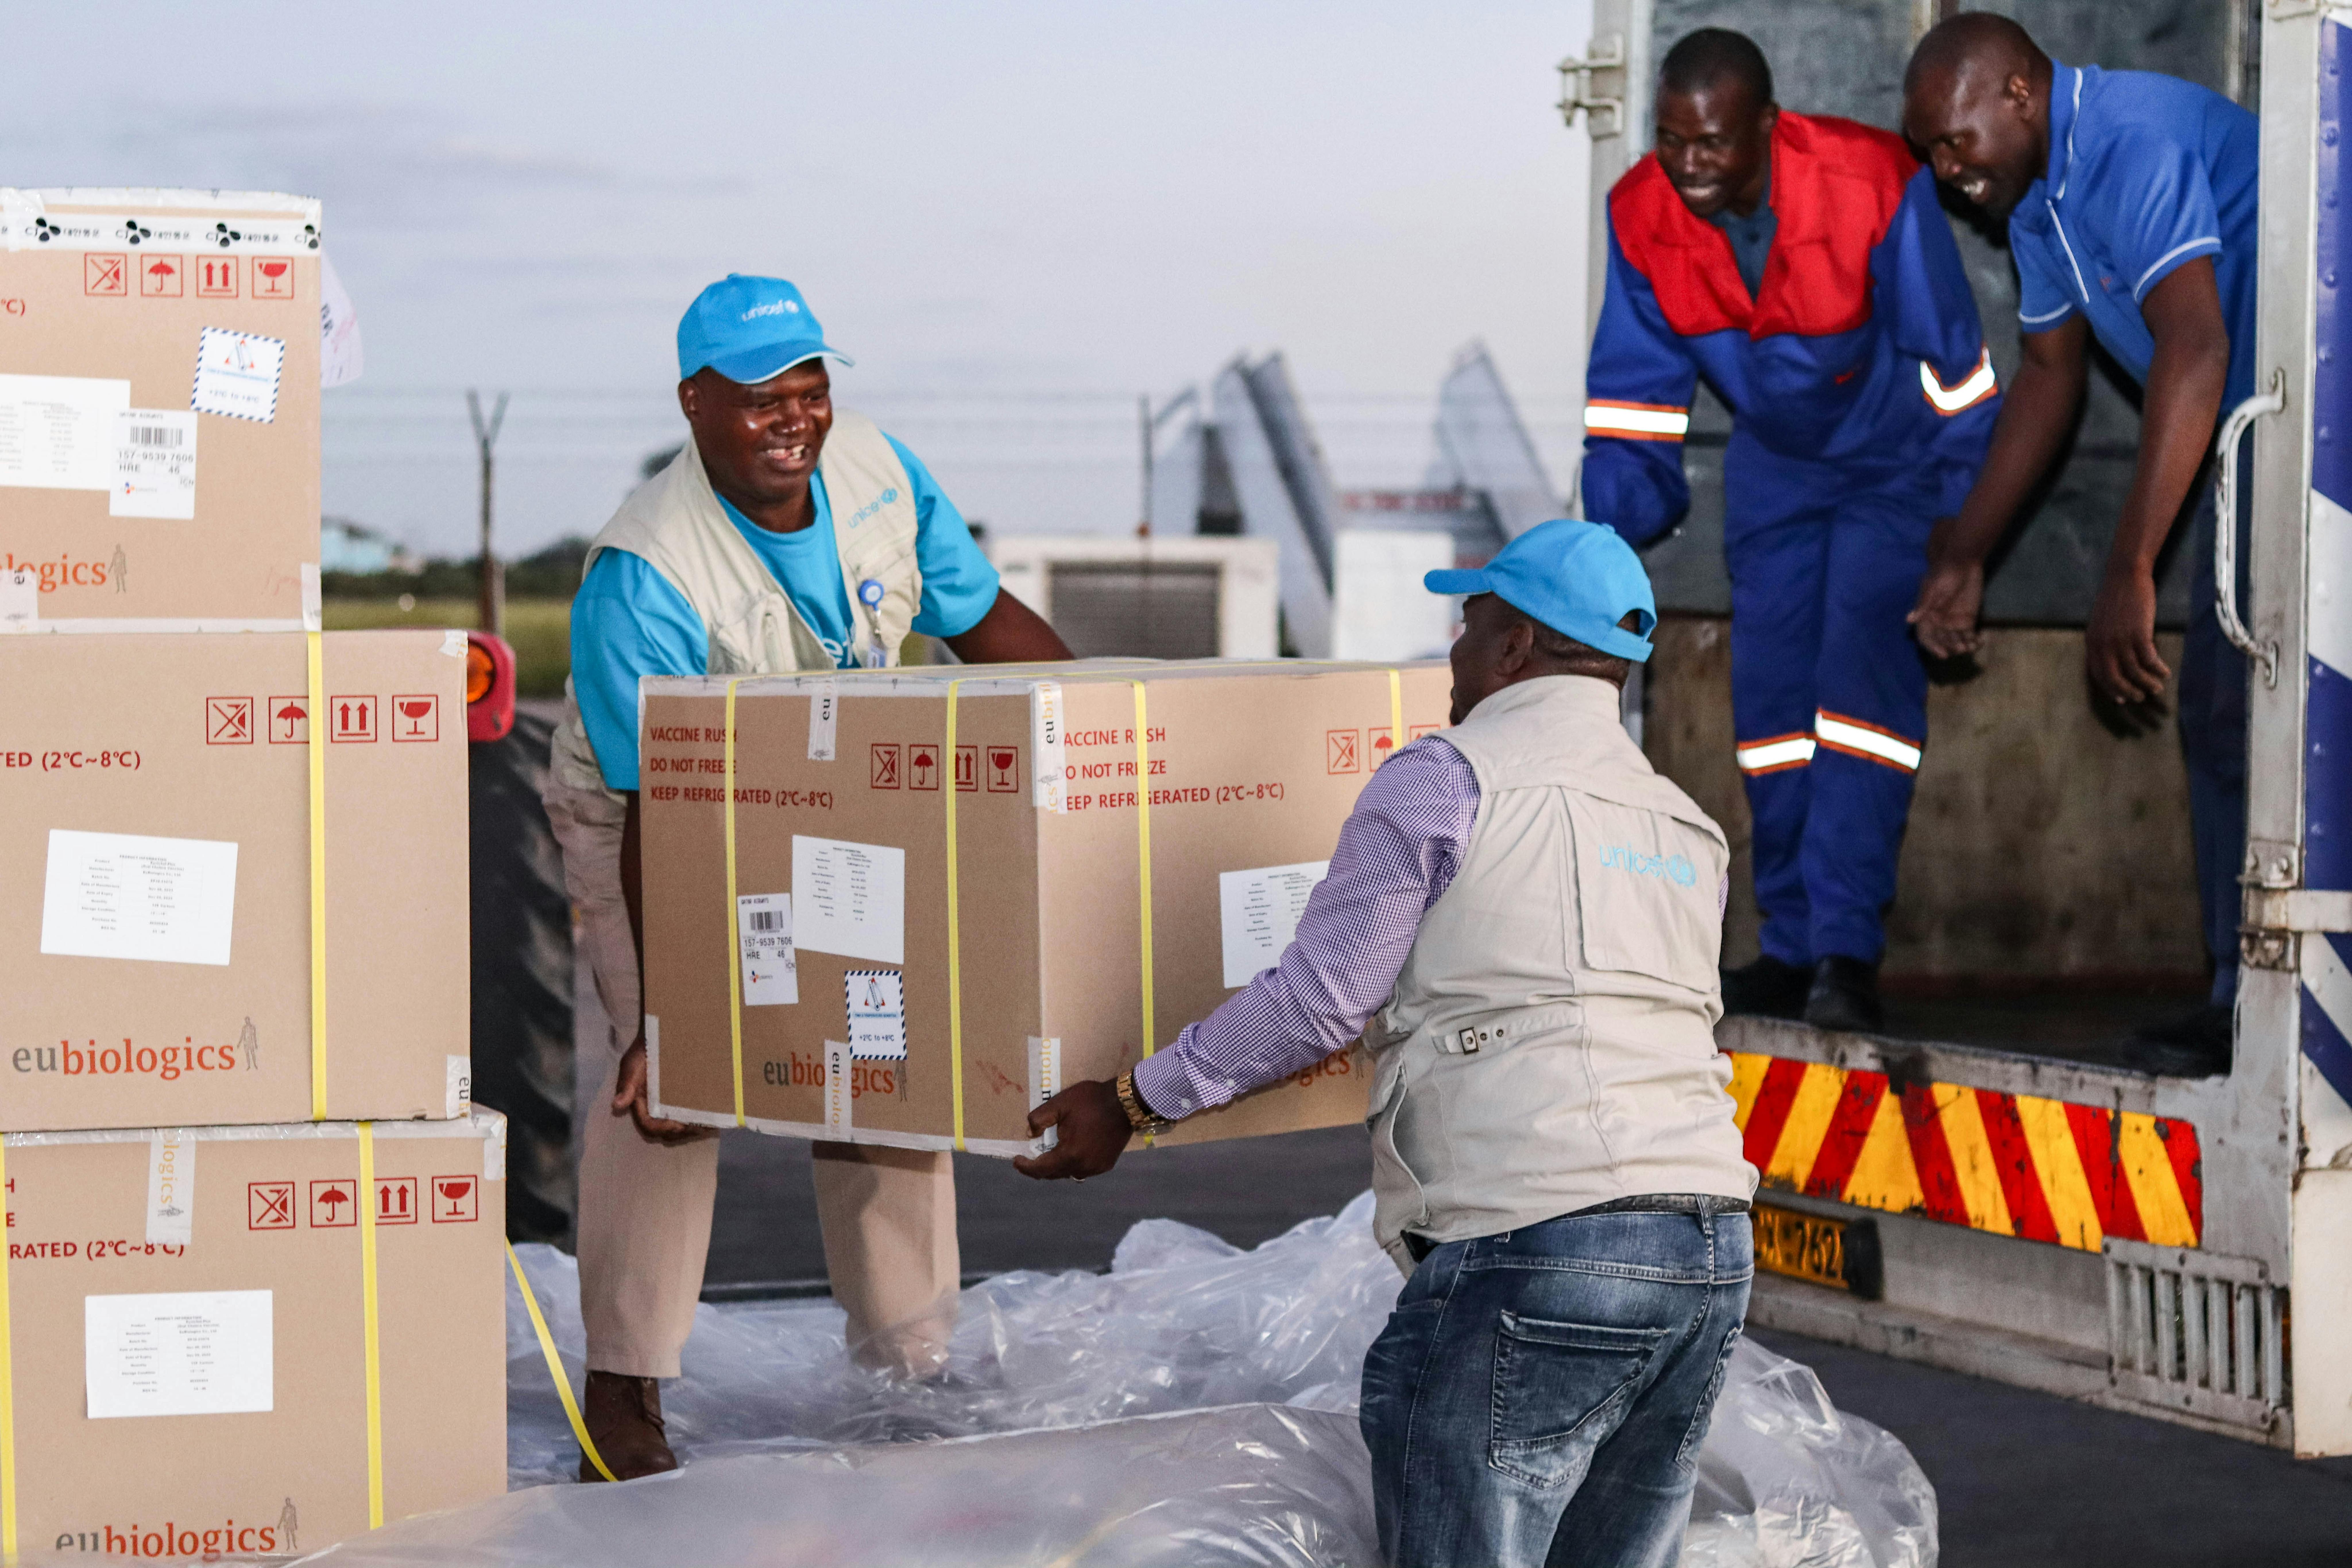 Aeroporto di Harare, Zimbabwe: arriva il primo lotto di vaccini contro il colera: UNICEF si sta occupando della distribuzione